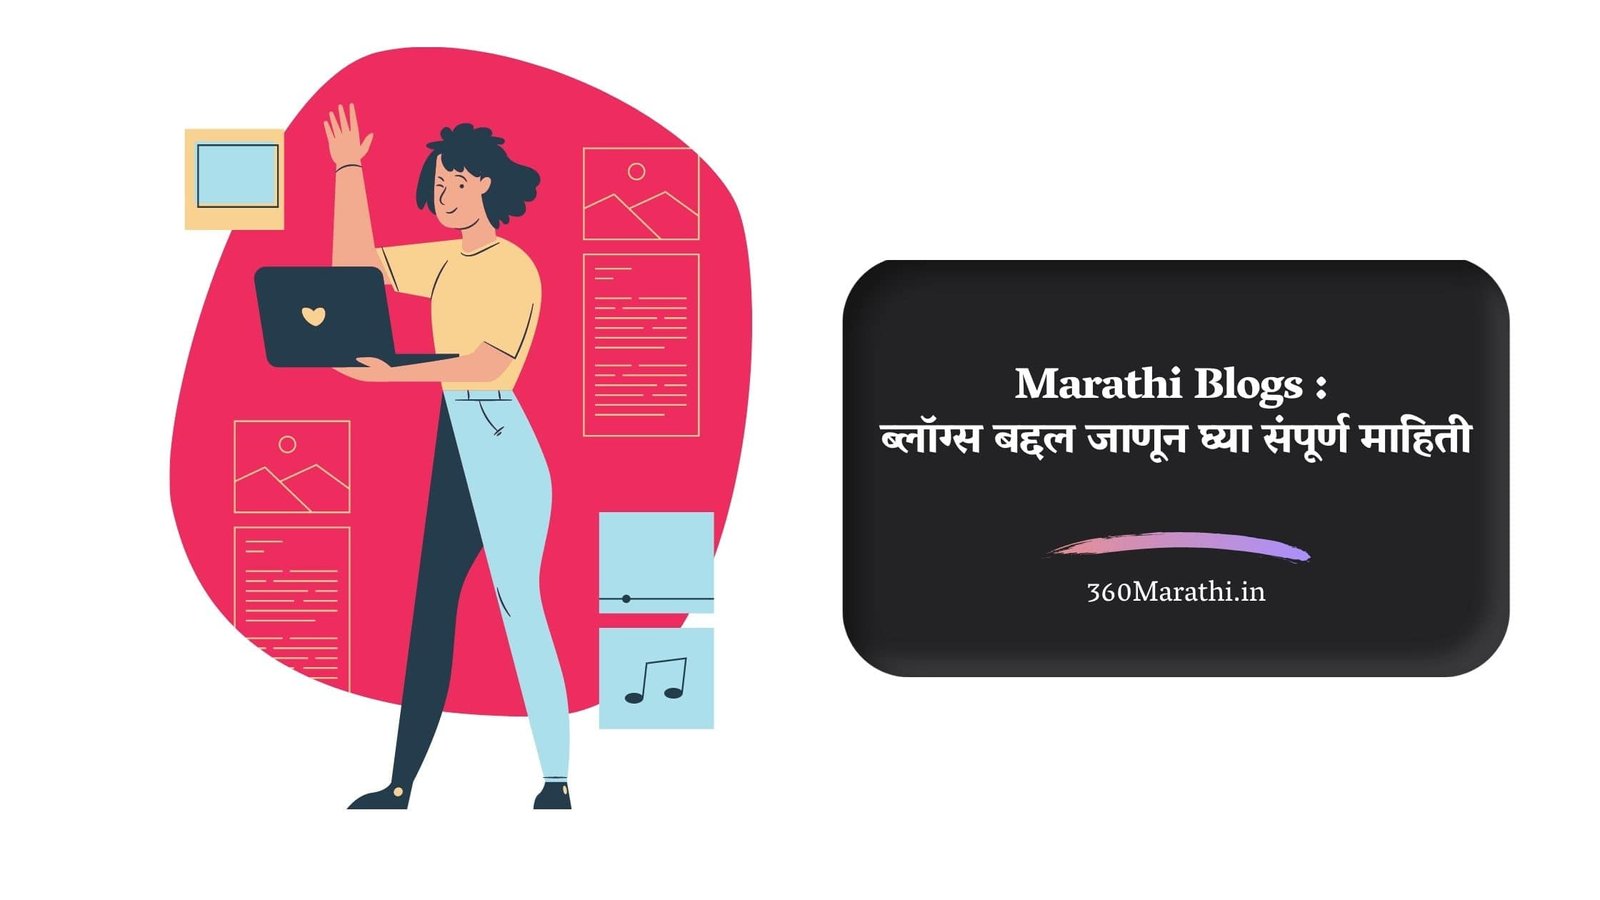 Marathi Blogs